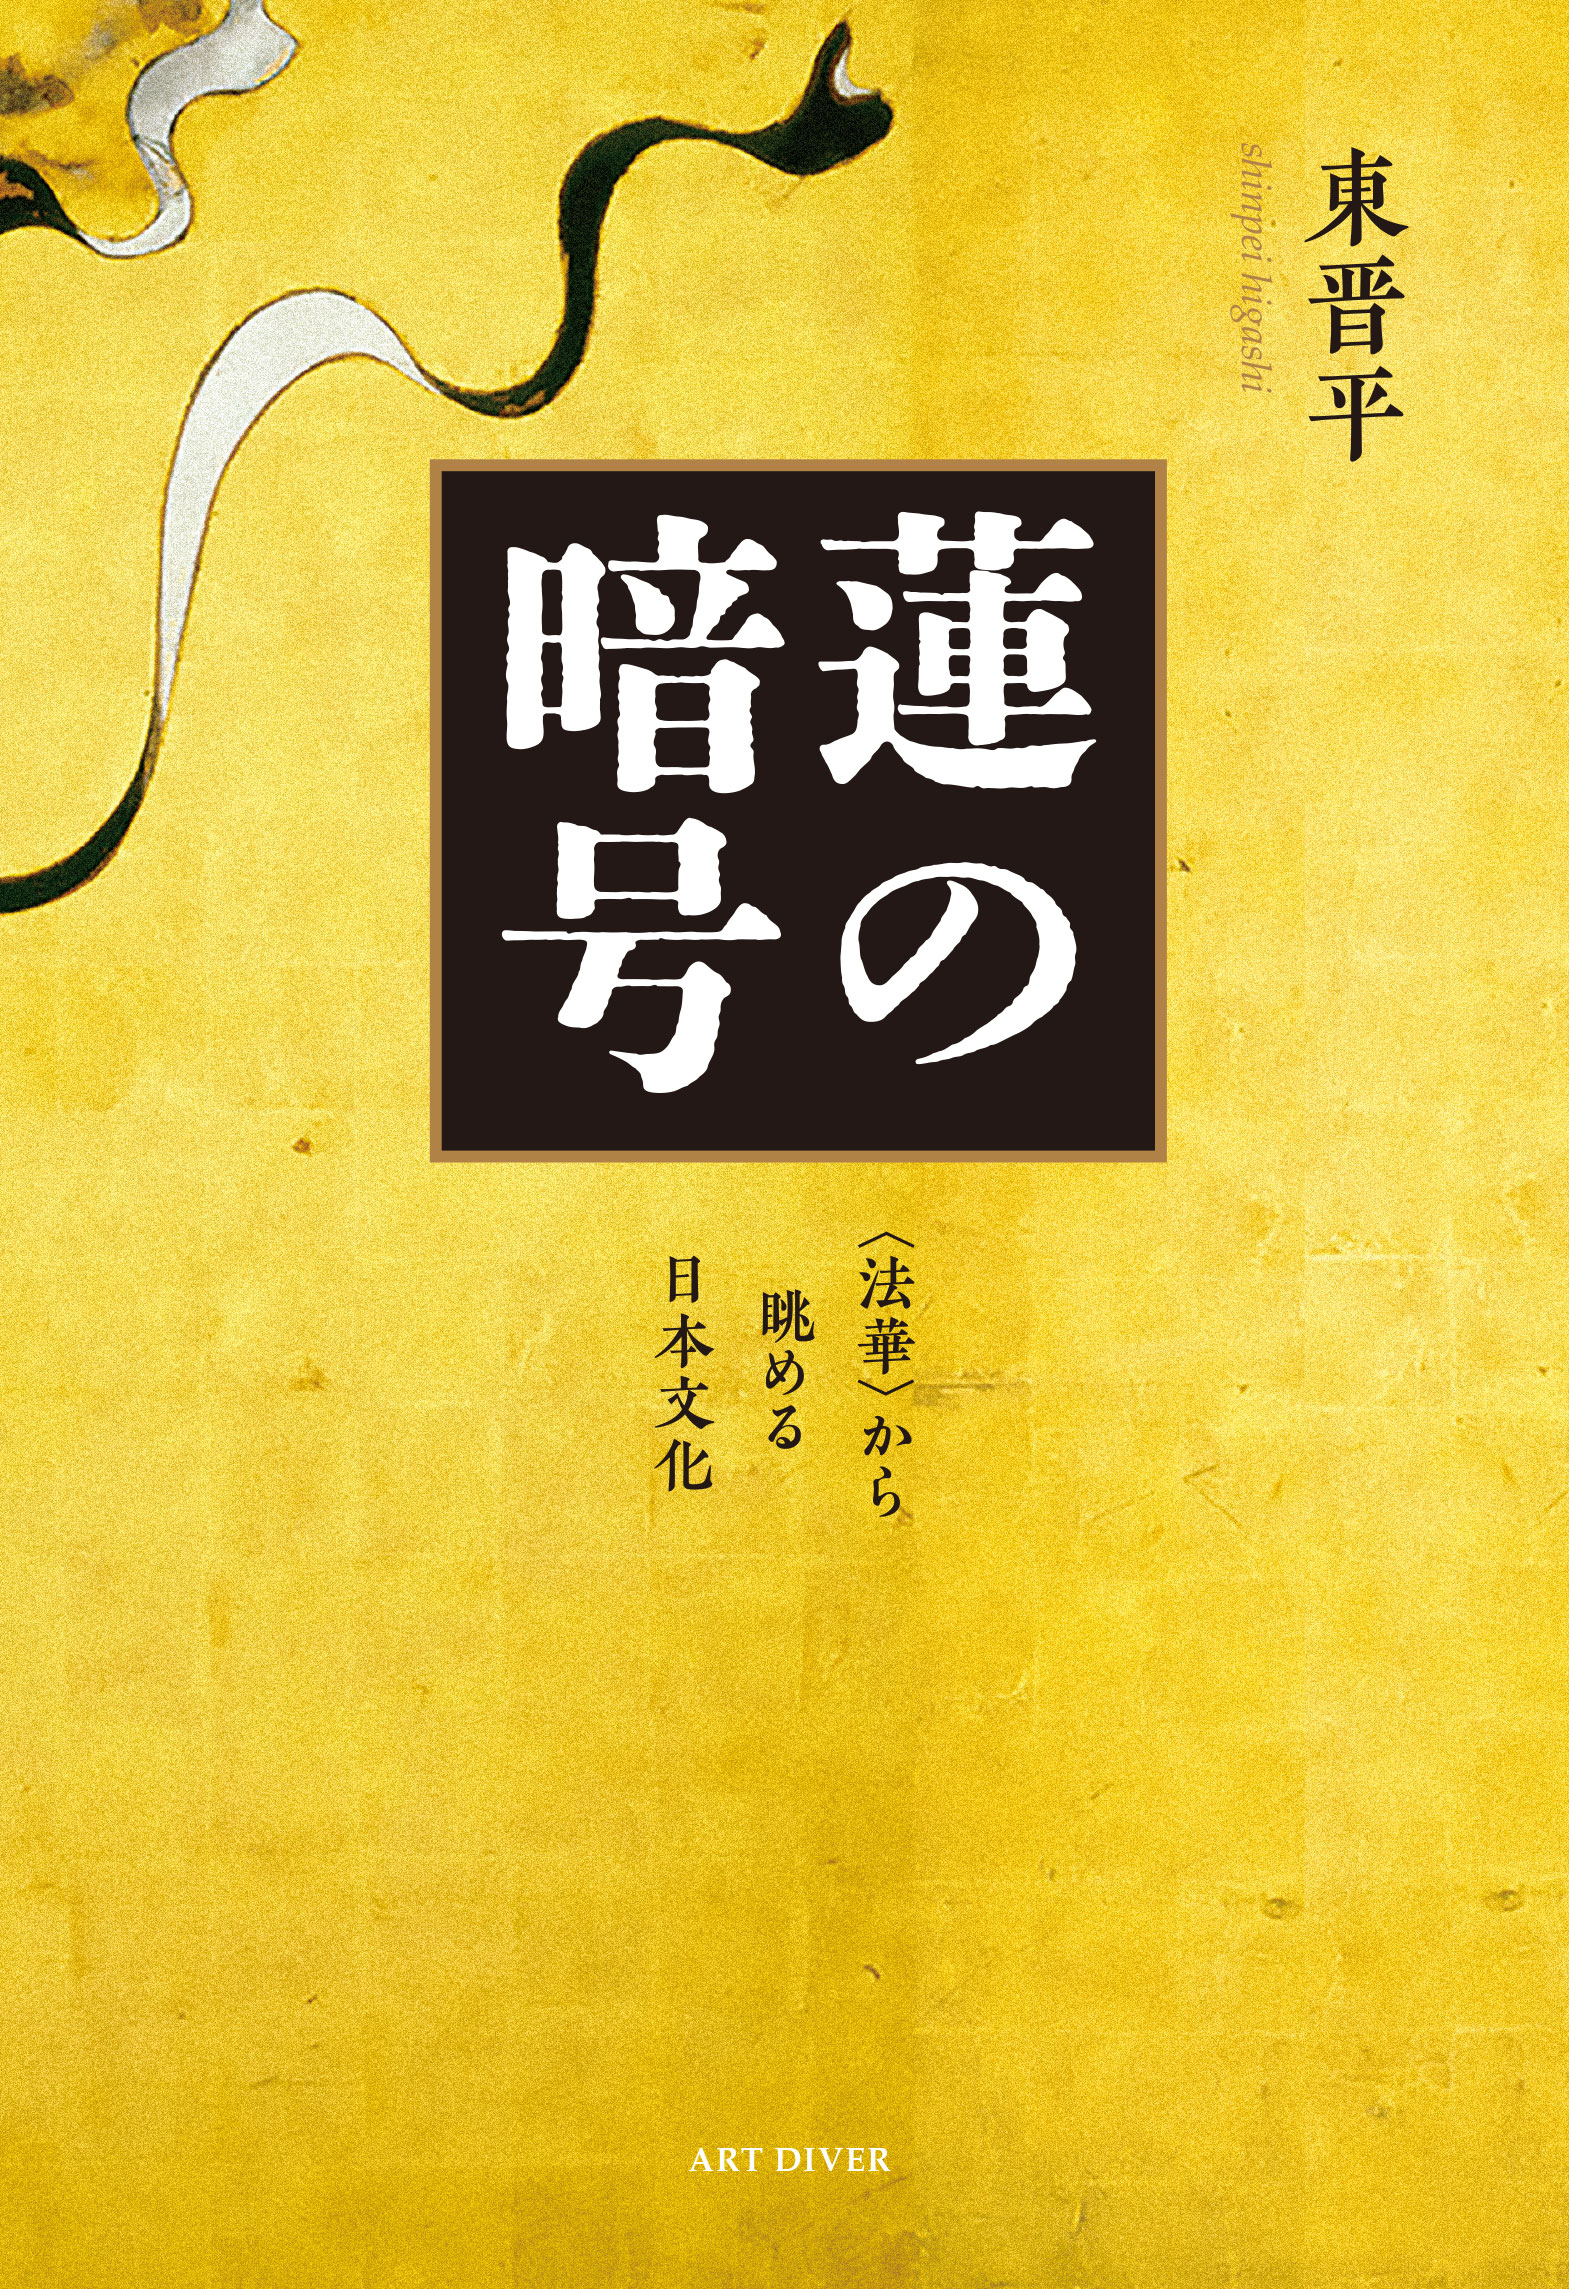 東晋平『蓮の暗号 ―〈法華〉から眺める日本文化』